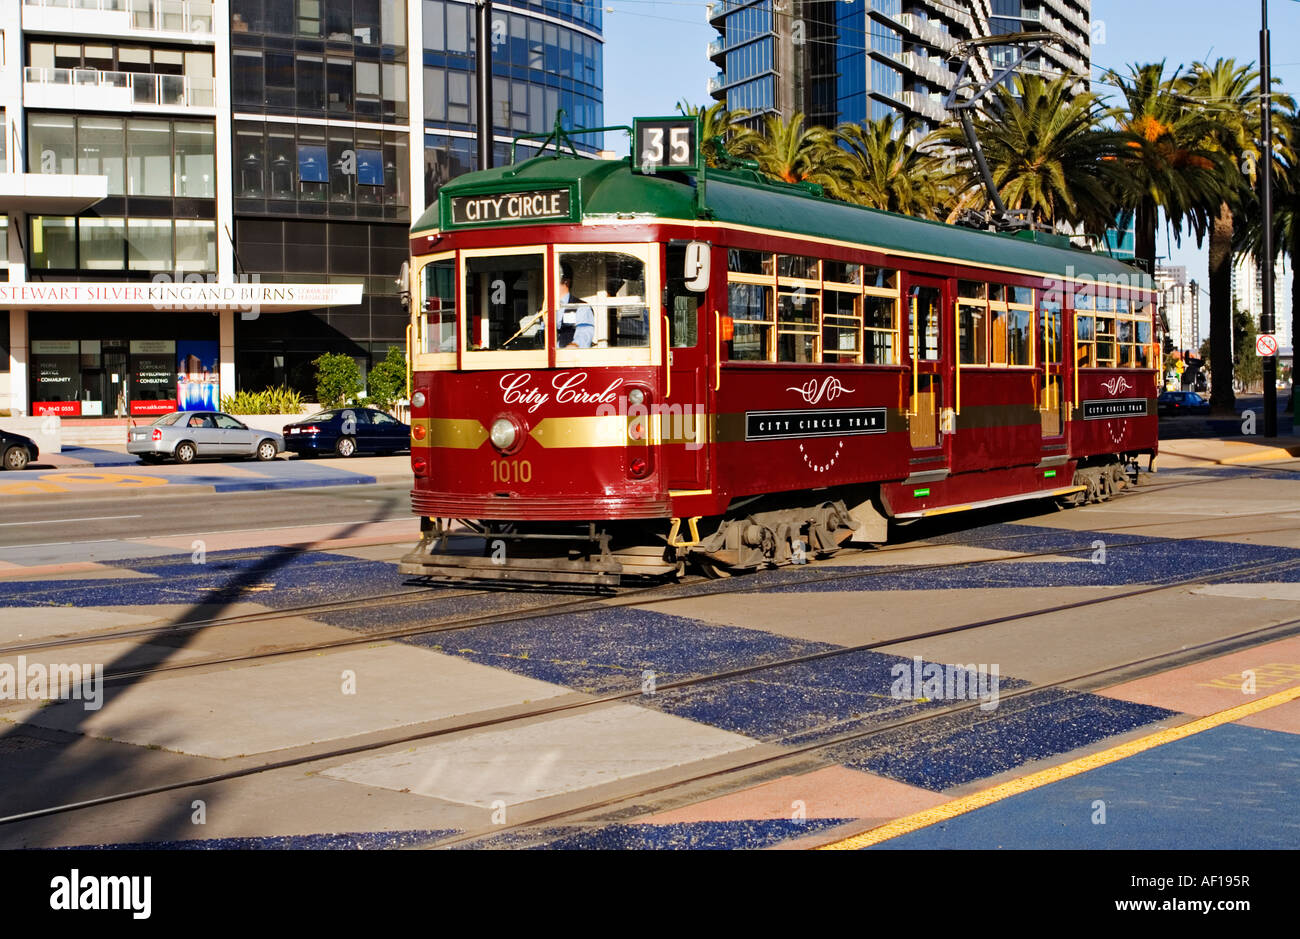 Melbourne Australie / UN Melbourne City Circle Tram à Melbourne Docklands / Melbourne Victoria en Australie. Banque D'Images